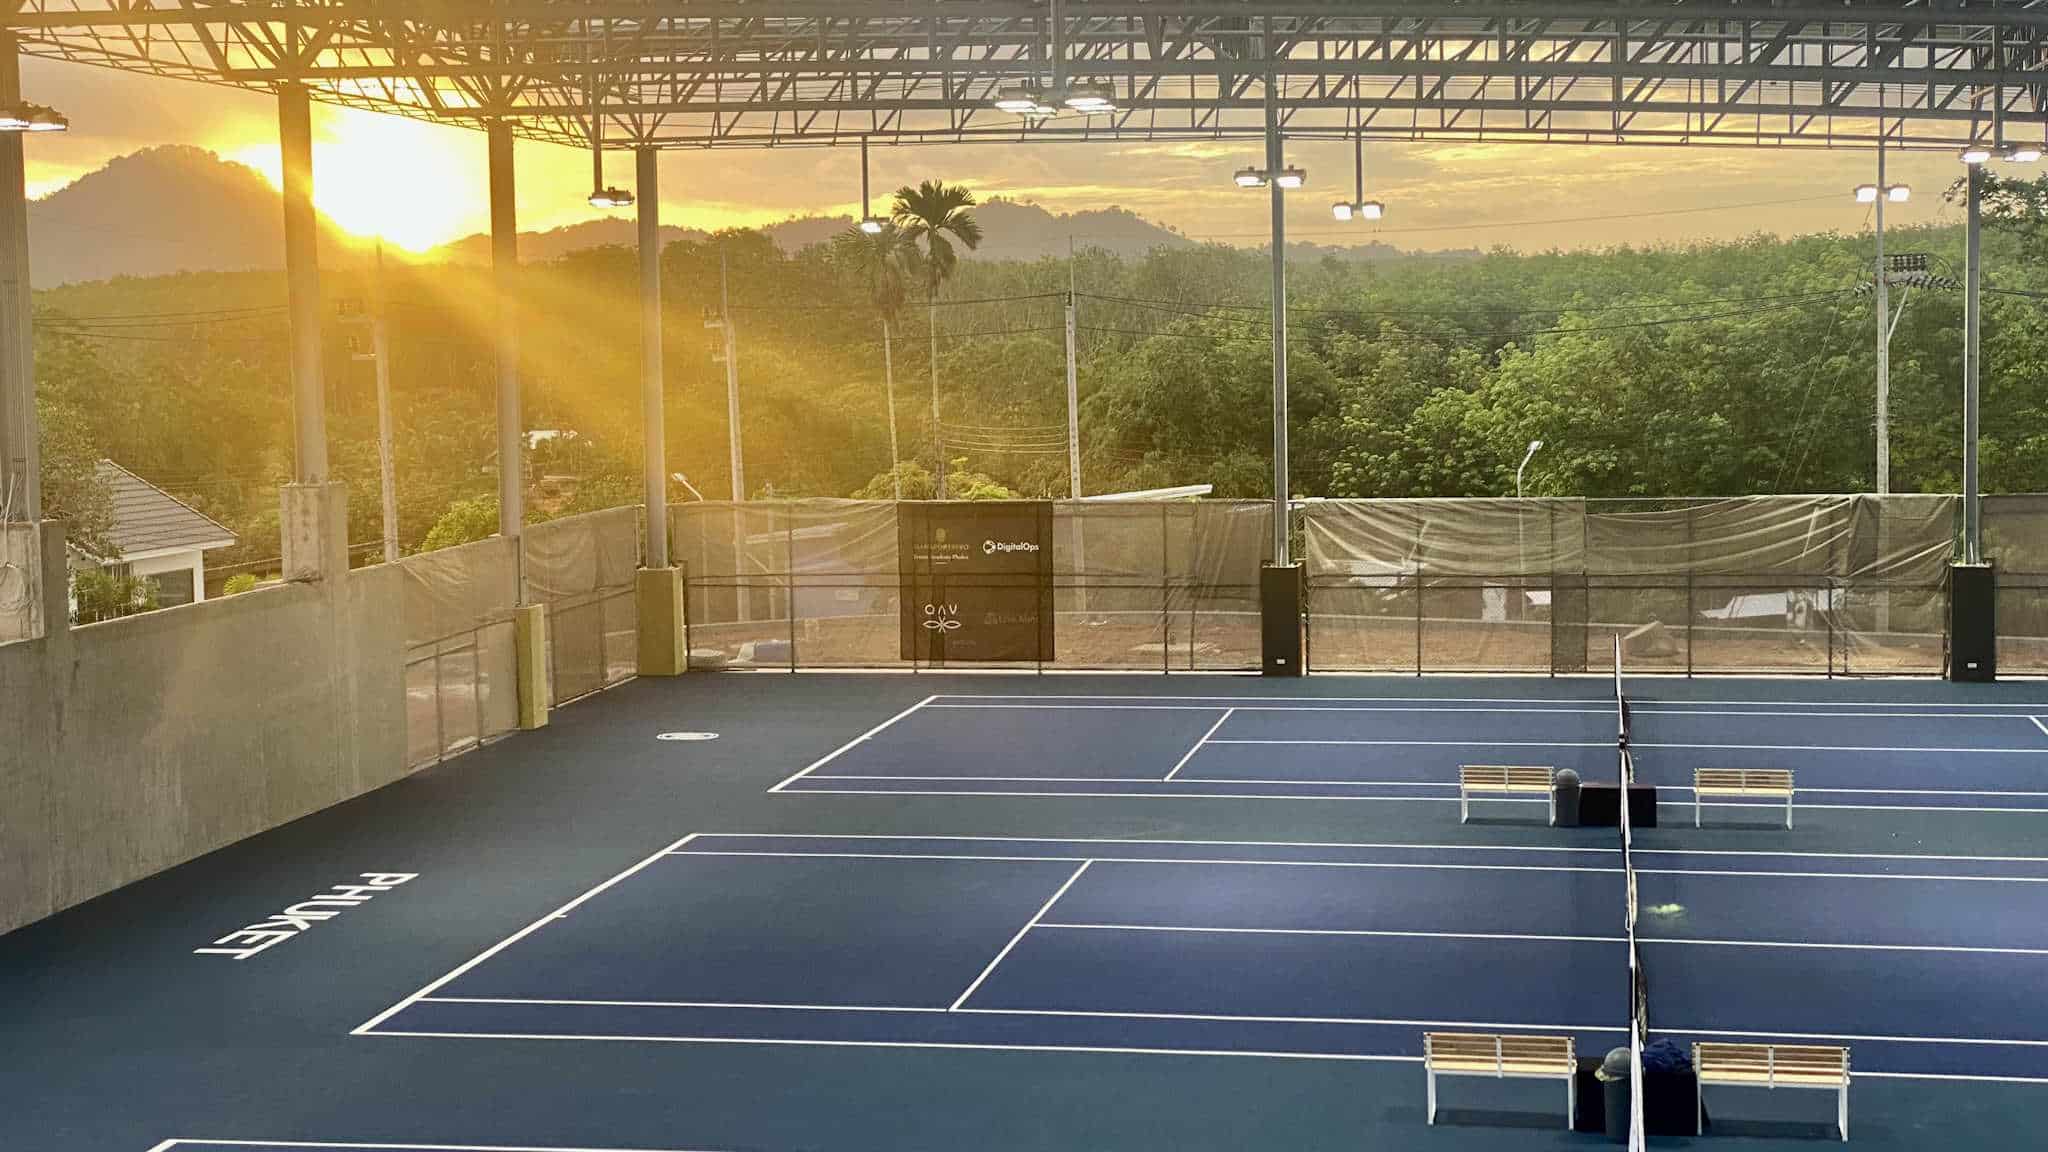 SiamSportsPro Tennis Academy Phuket 3 Laykold Courts Sunrise